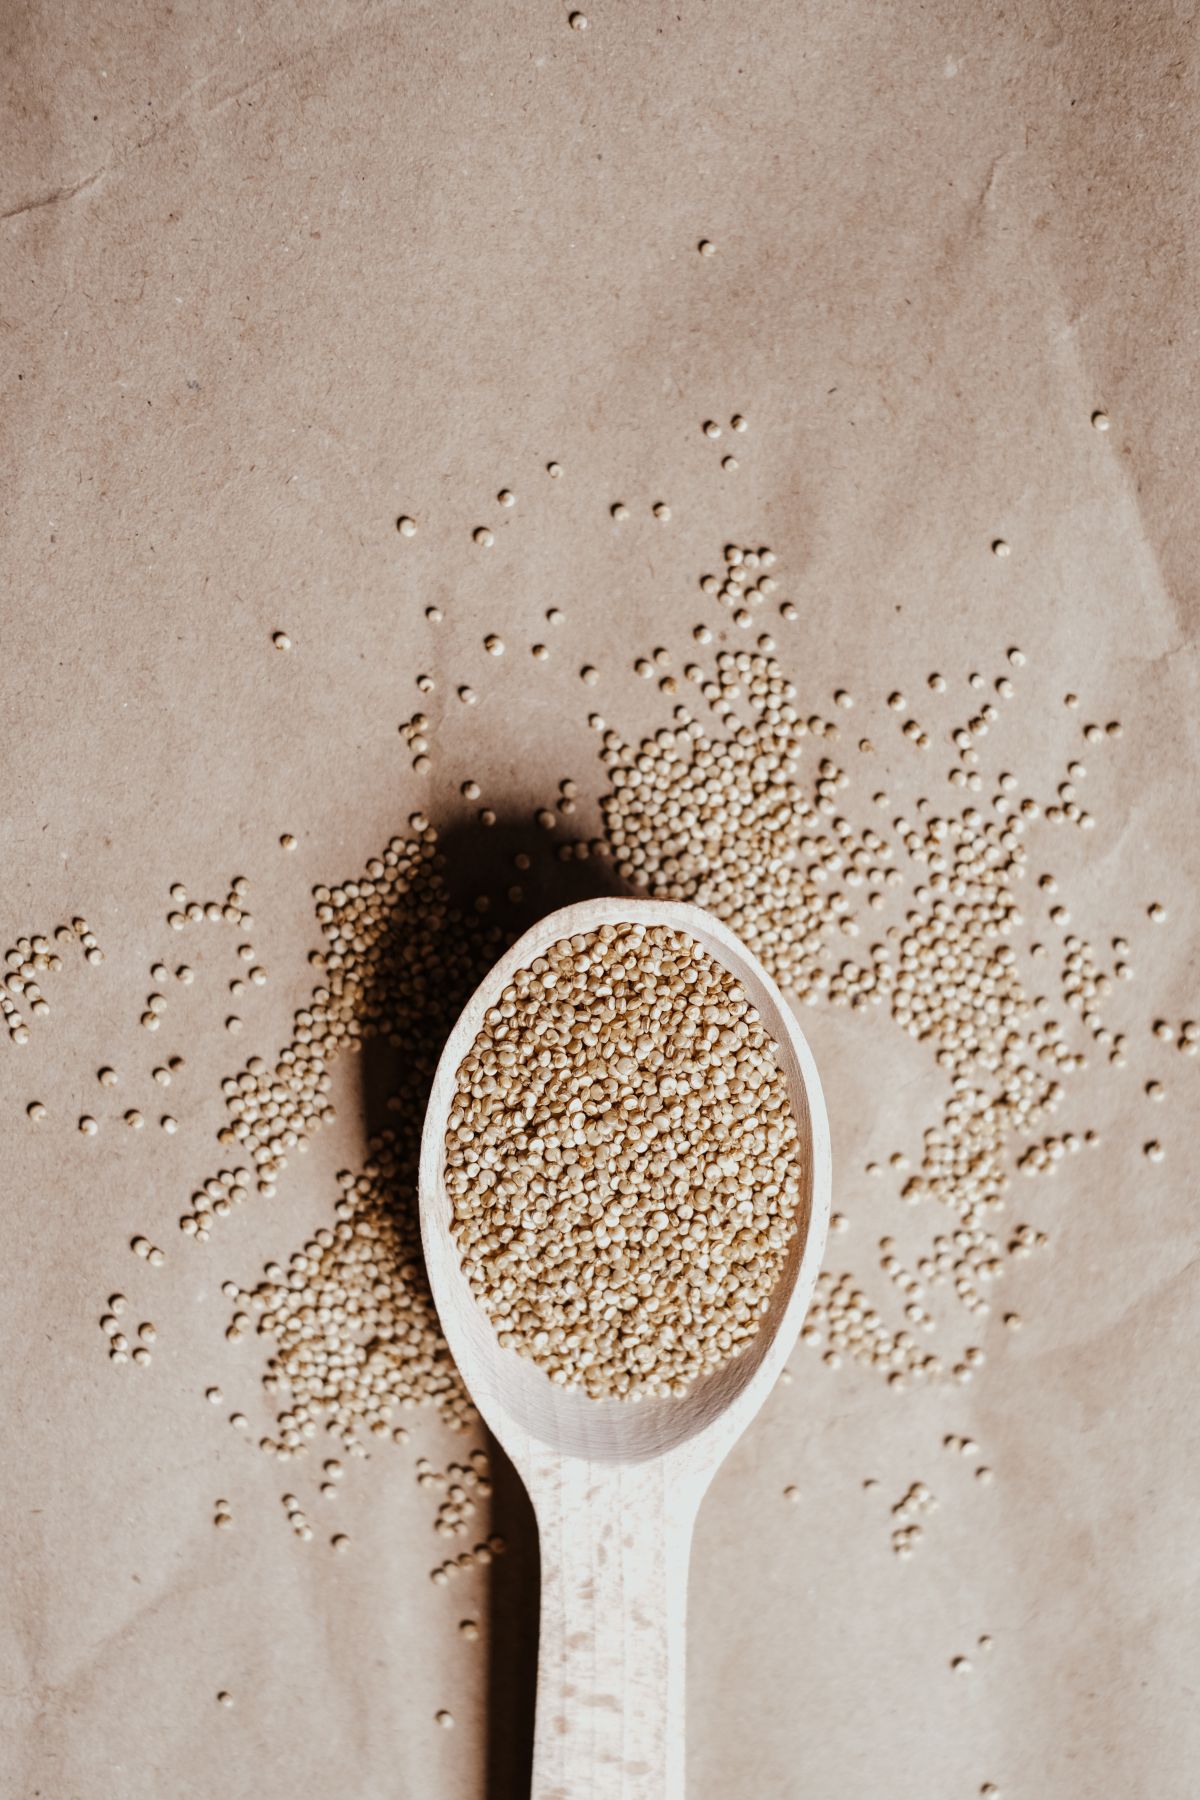 kvinoja dobrobiti recepti